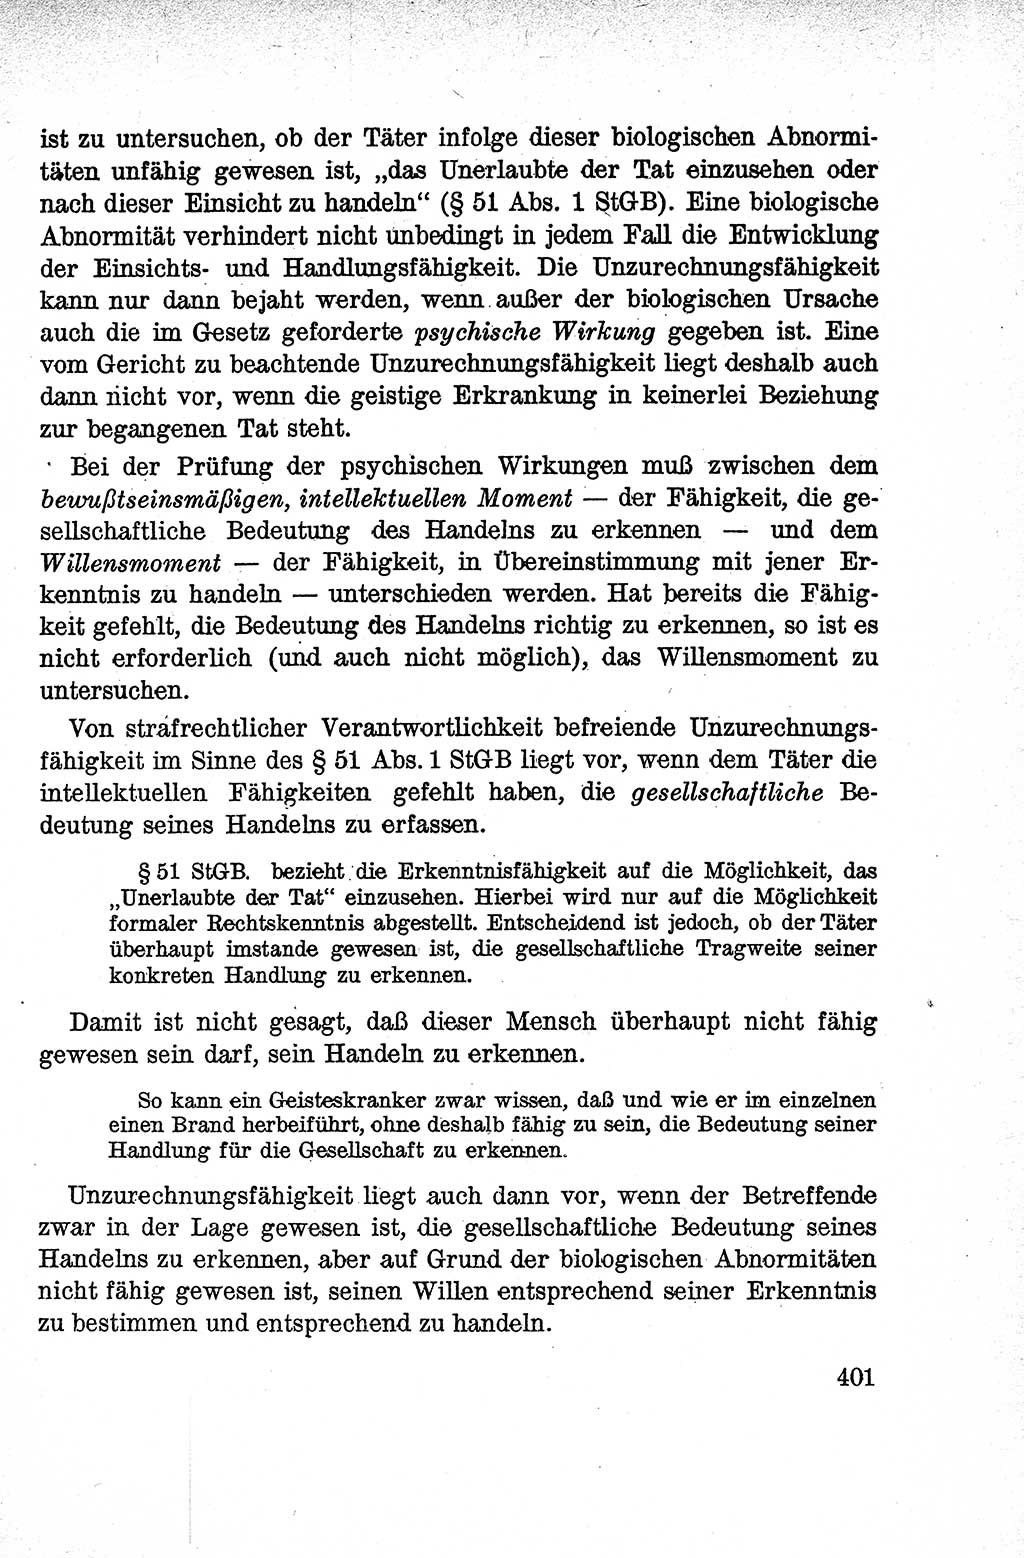 Lehrbuch des Strafrechts der Deutschen Demokratischen Republik (DDR), Allgemeiner Teil 1959, Seite 401 (Lb. Strafr. DDR AT 1959, S. 401)